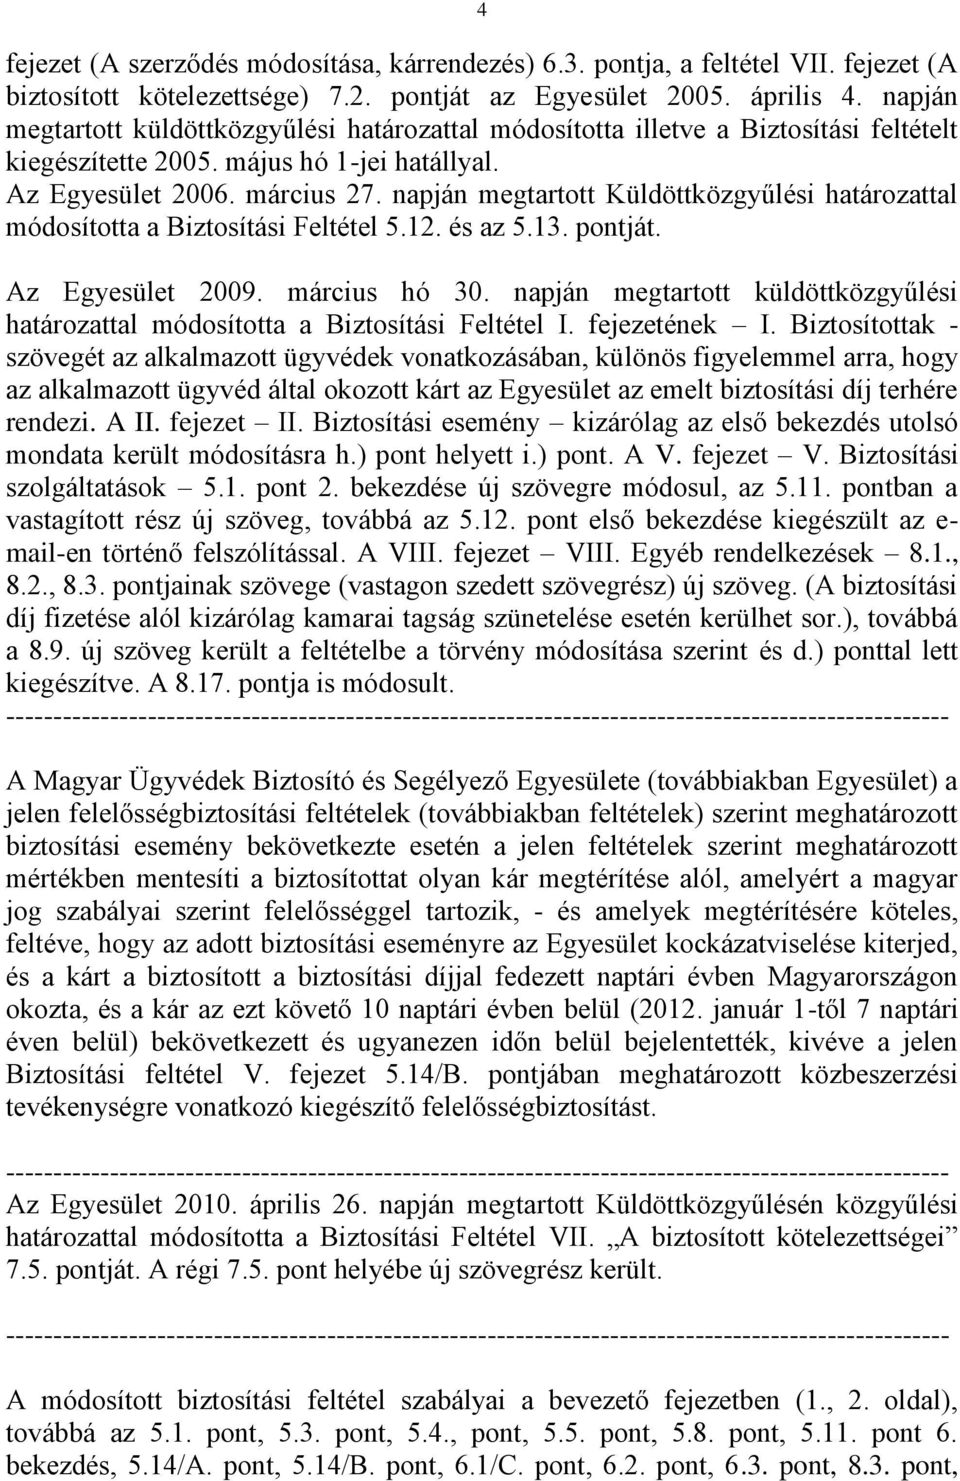 Magyar Ügyvédek Biztosító és Segélyező Egyesületének módosított ügyvédi  felelősségbiztosítási feltétele (biztosítási feltételek) - PDF Ingyenes  letöltés